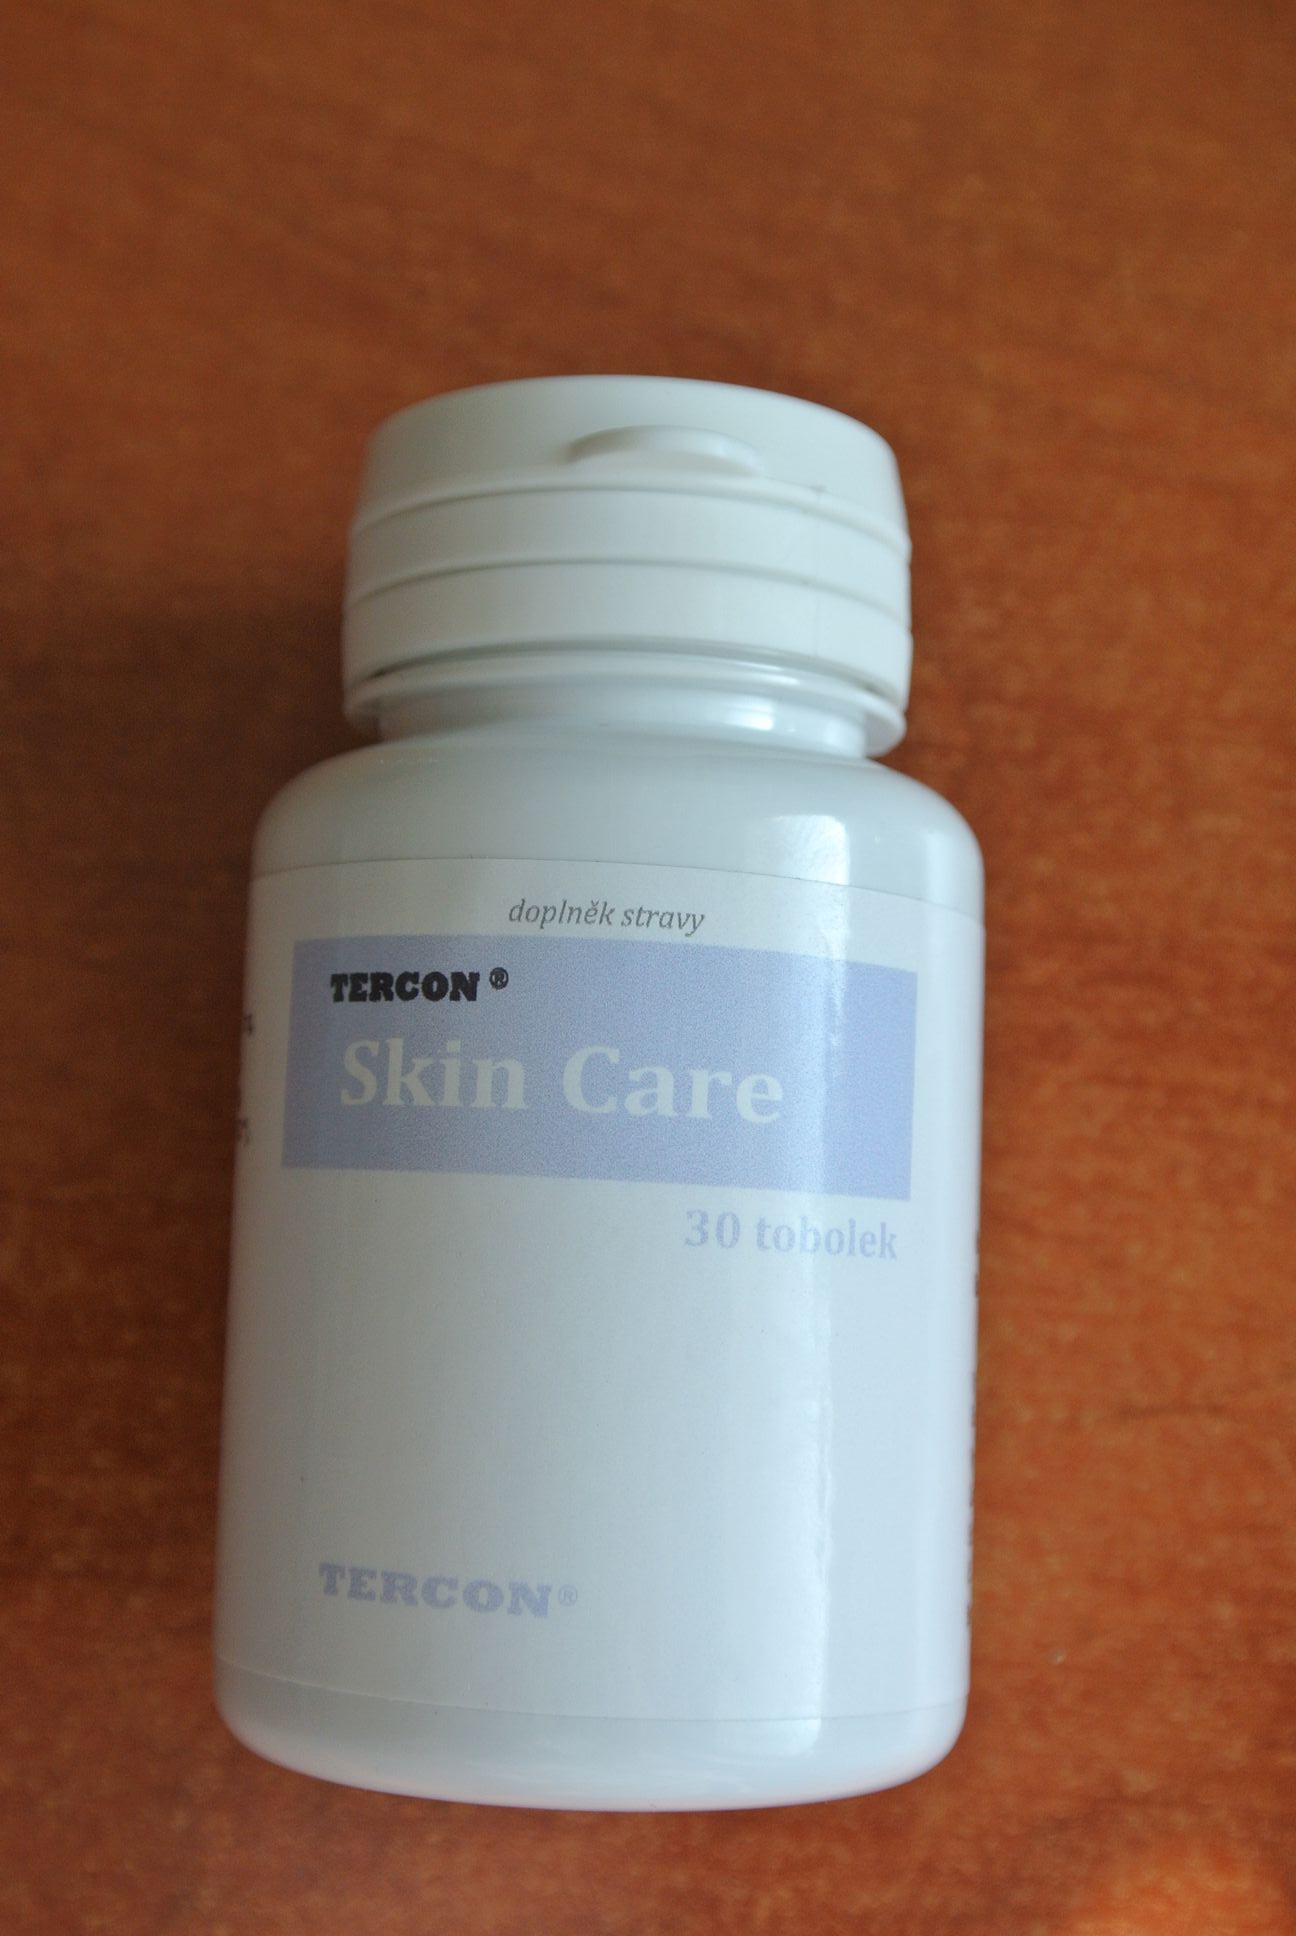 Doplňku stravy Tercon Skin Care chybí přes 98 % slibované dávky vitamínu B2